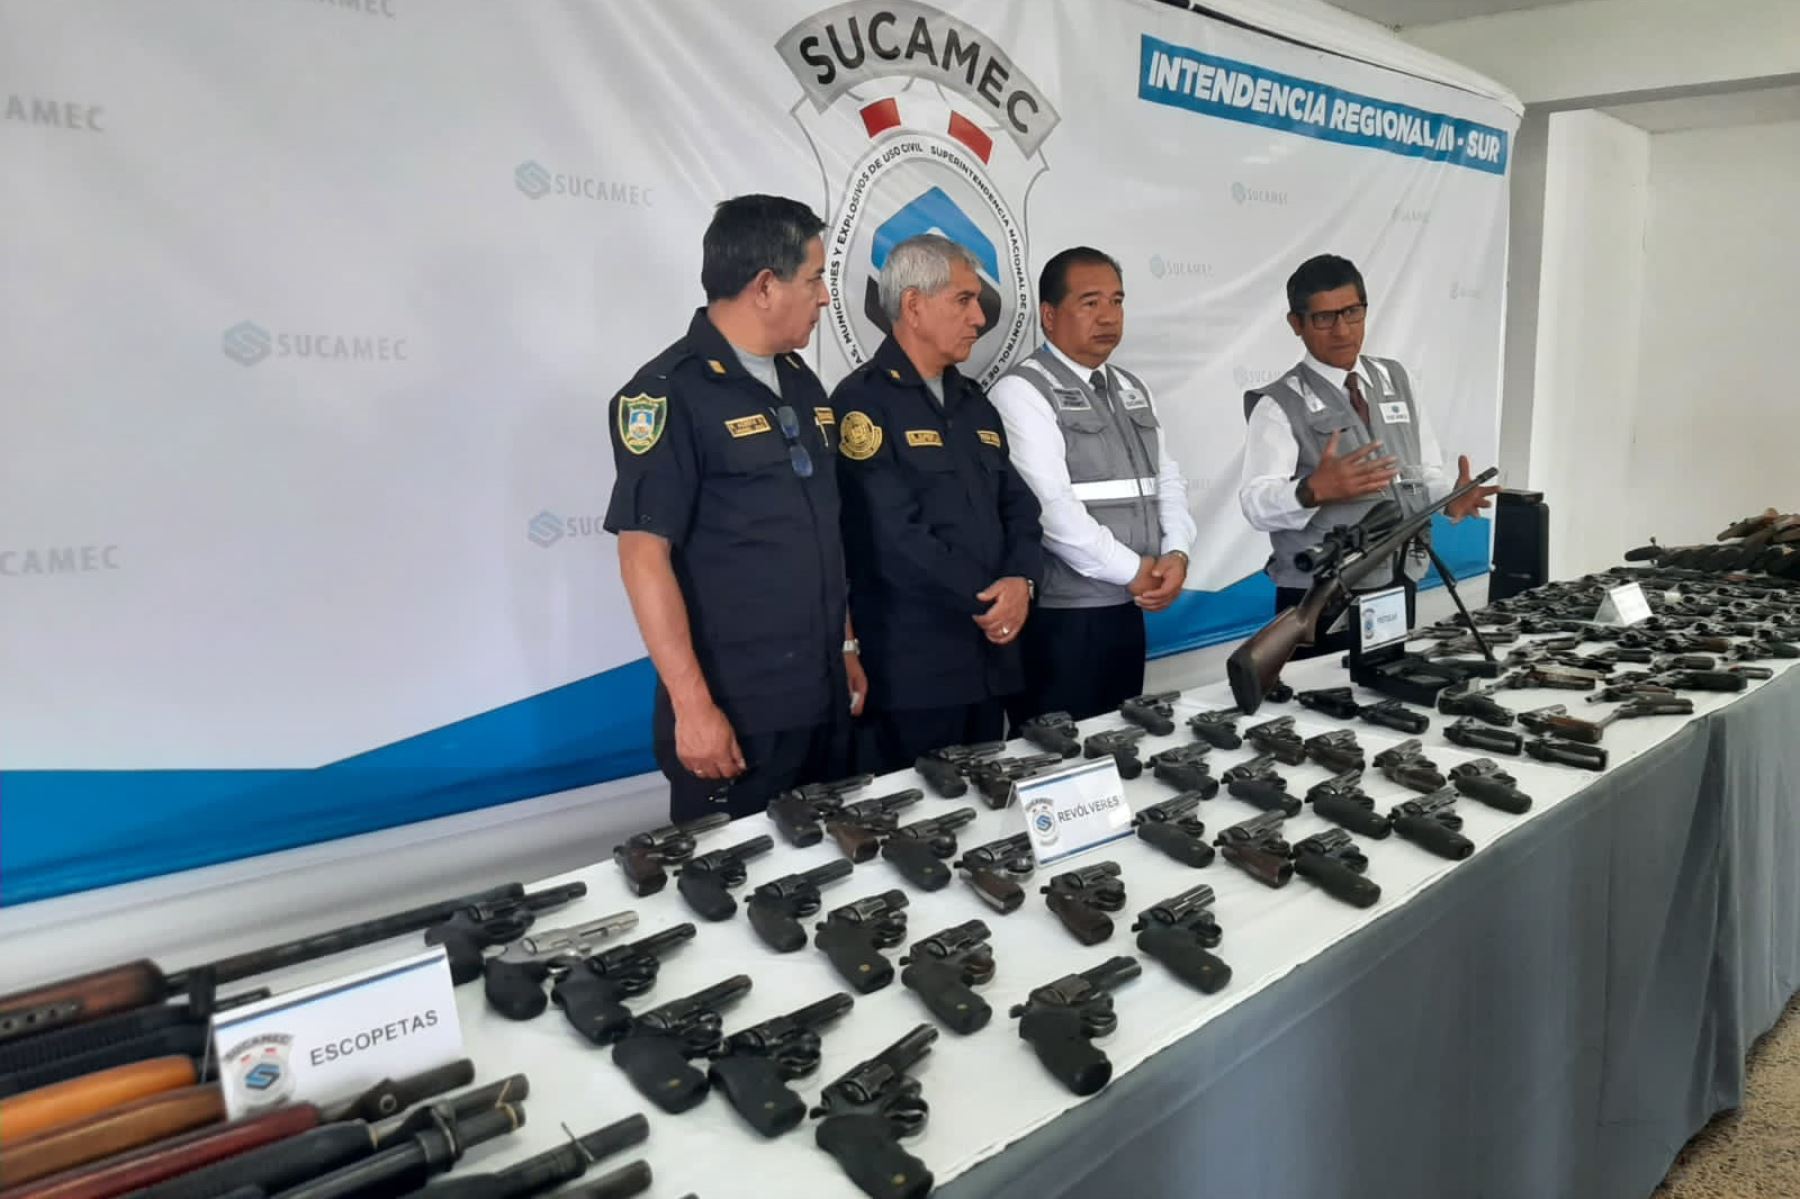 Se presentaron 665 revólveres, 126 escopetas, 96 pistolas y 3 carabinas que ahora están internadas en los almacenes de la Sucamec Arequipa.